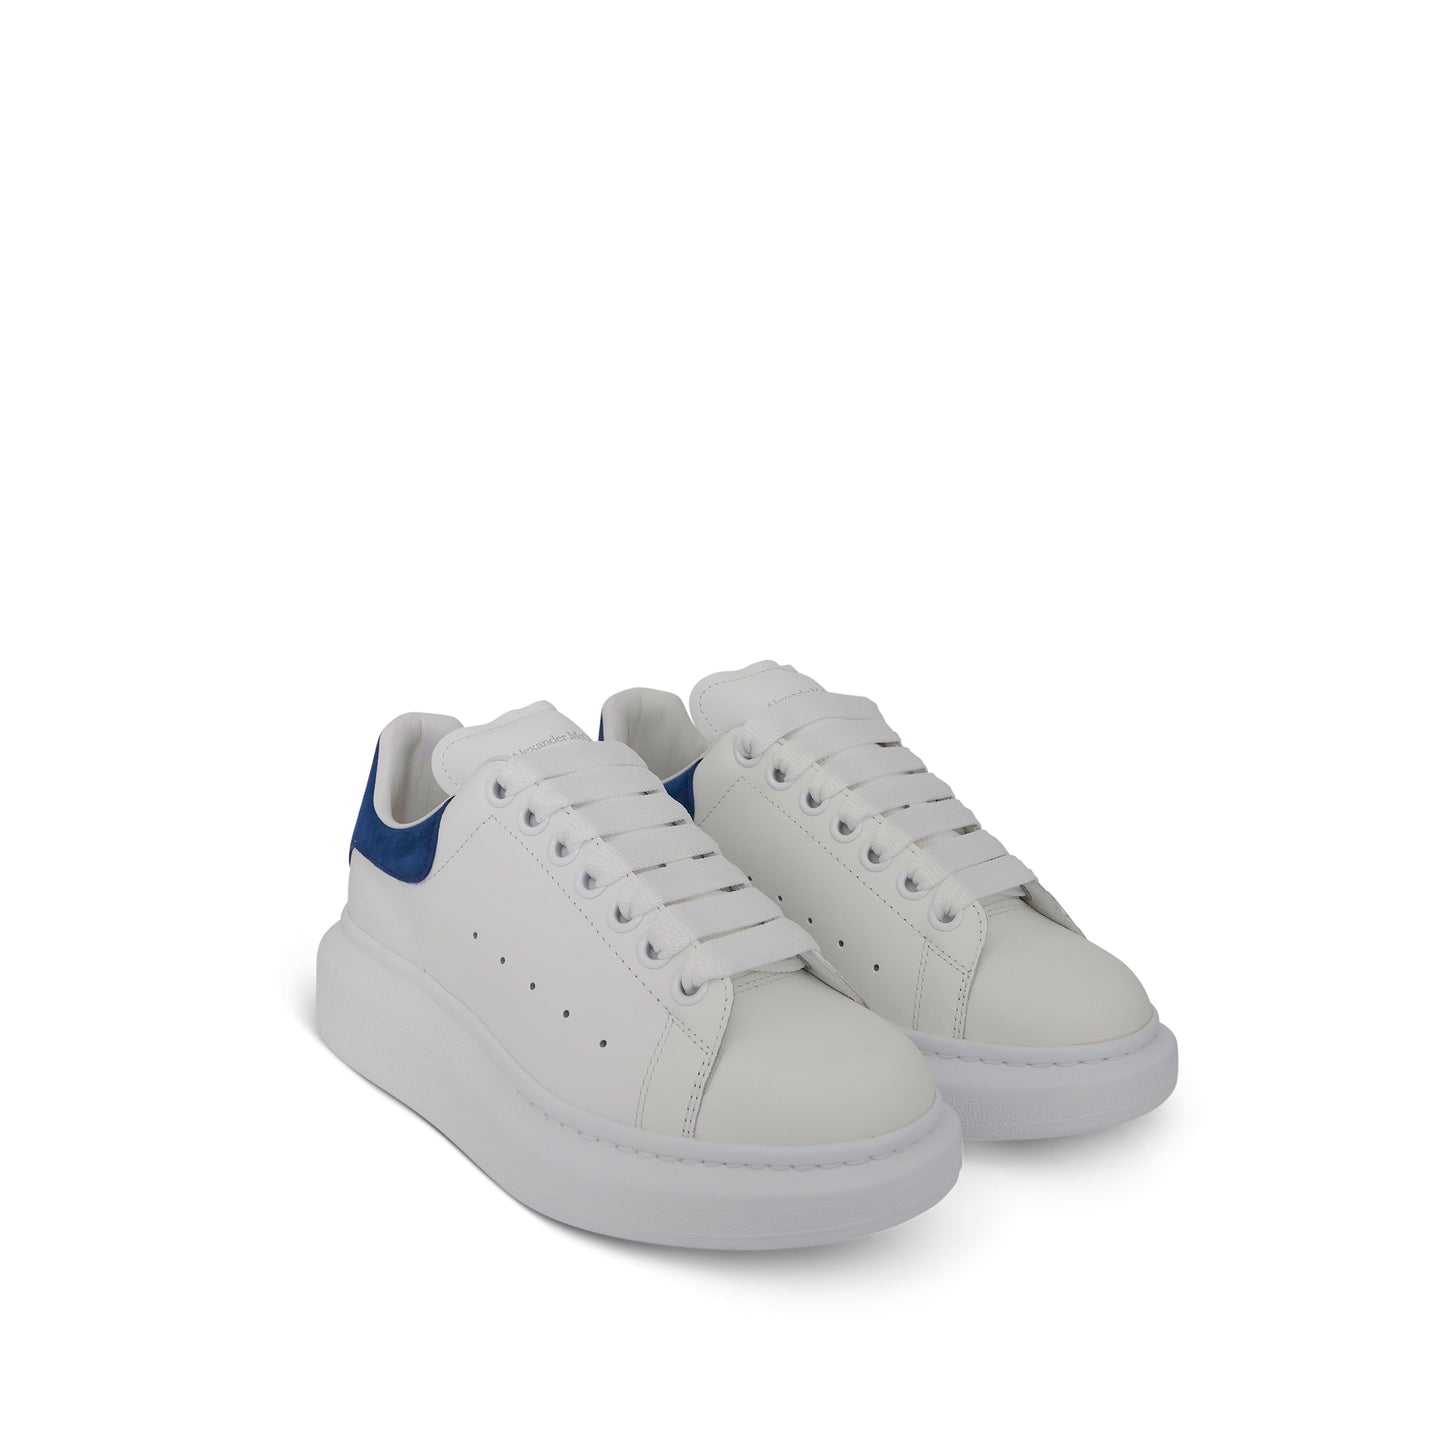 Larry Oversized Heel Sneaker in White/Paris Blue